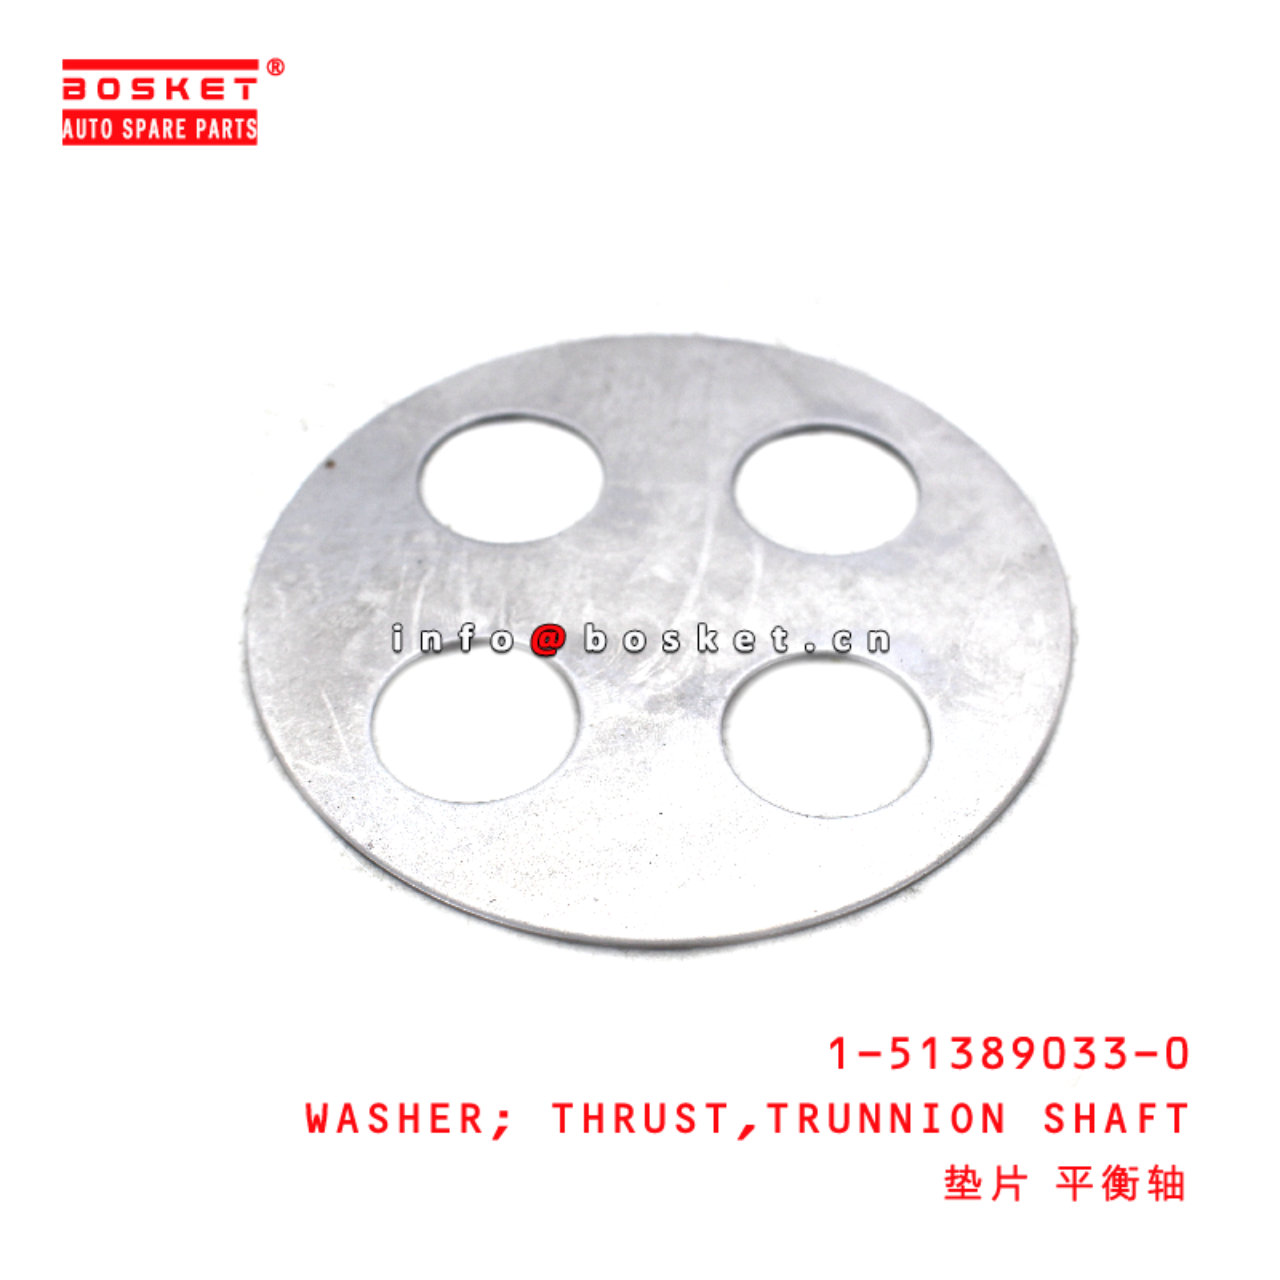 1-51389033-0 Trunnion Shaft Thrust Washer suitable for ISUZU   1513890330